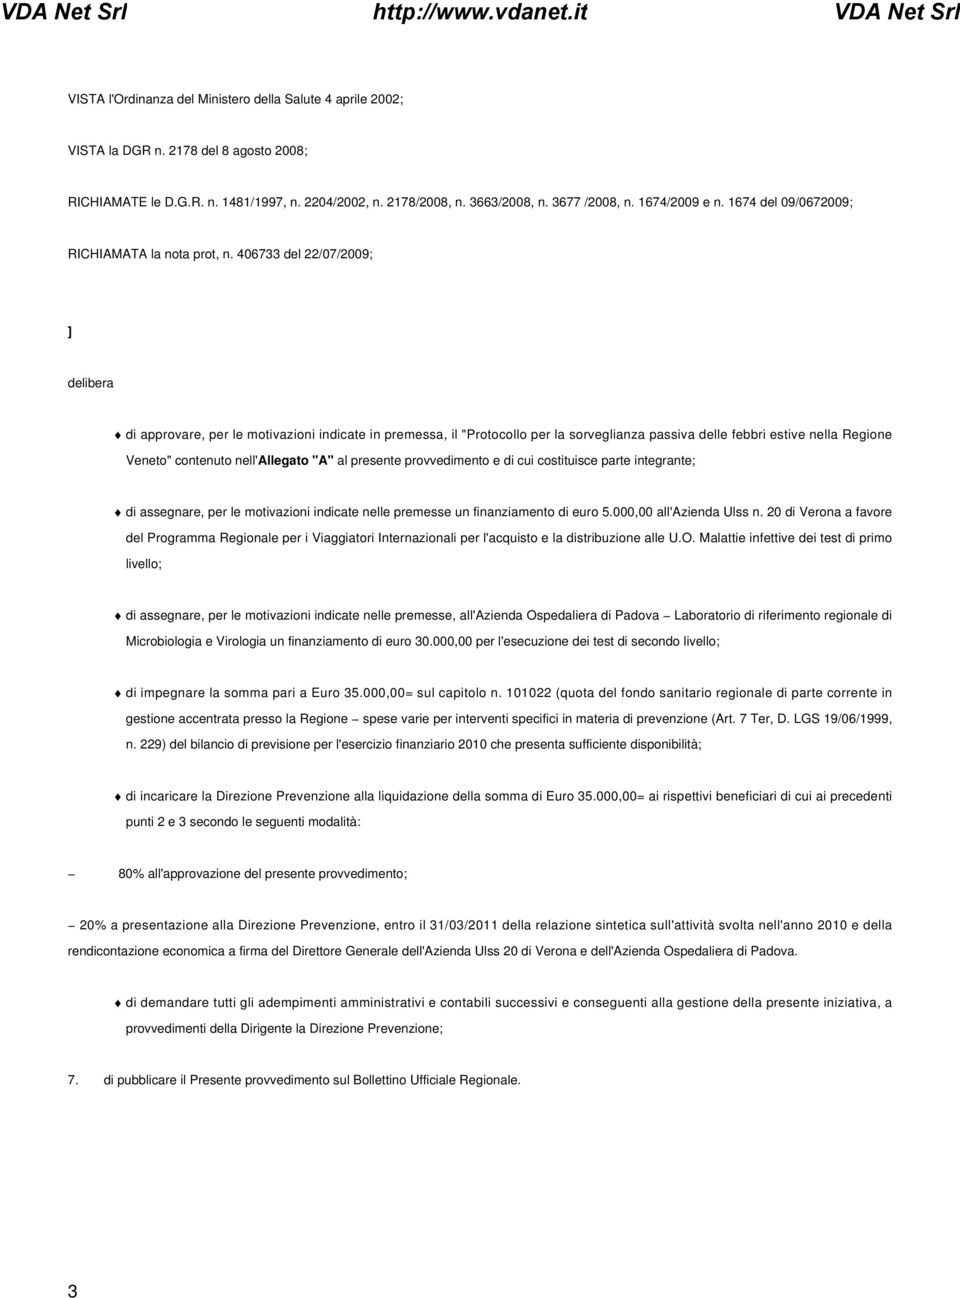 406733 del 22/07/2009; ] delibera di approvare, per le motivazioni indicate in premessa, il "Protocollo per la sorveglianza passiva delle febbri estive nella Regione Veneto" contenuto nell'allegato